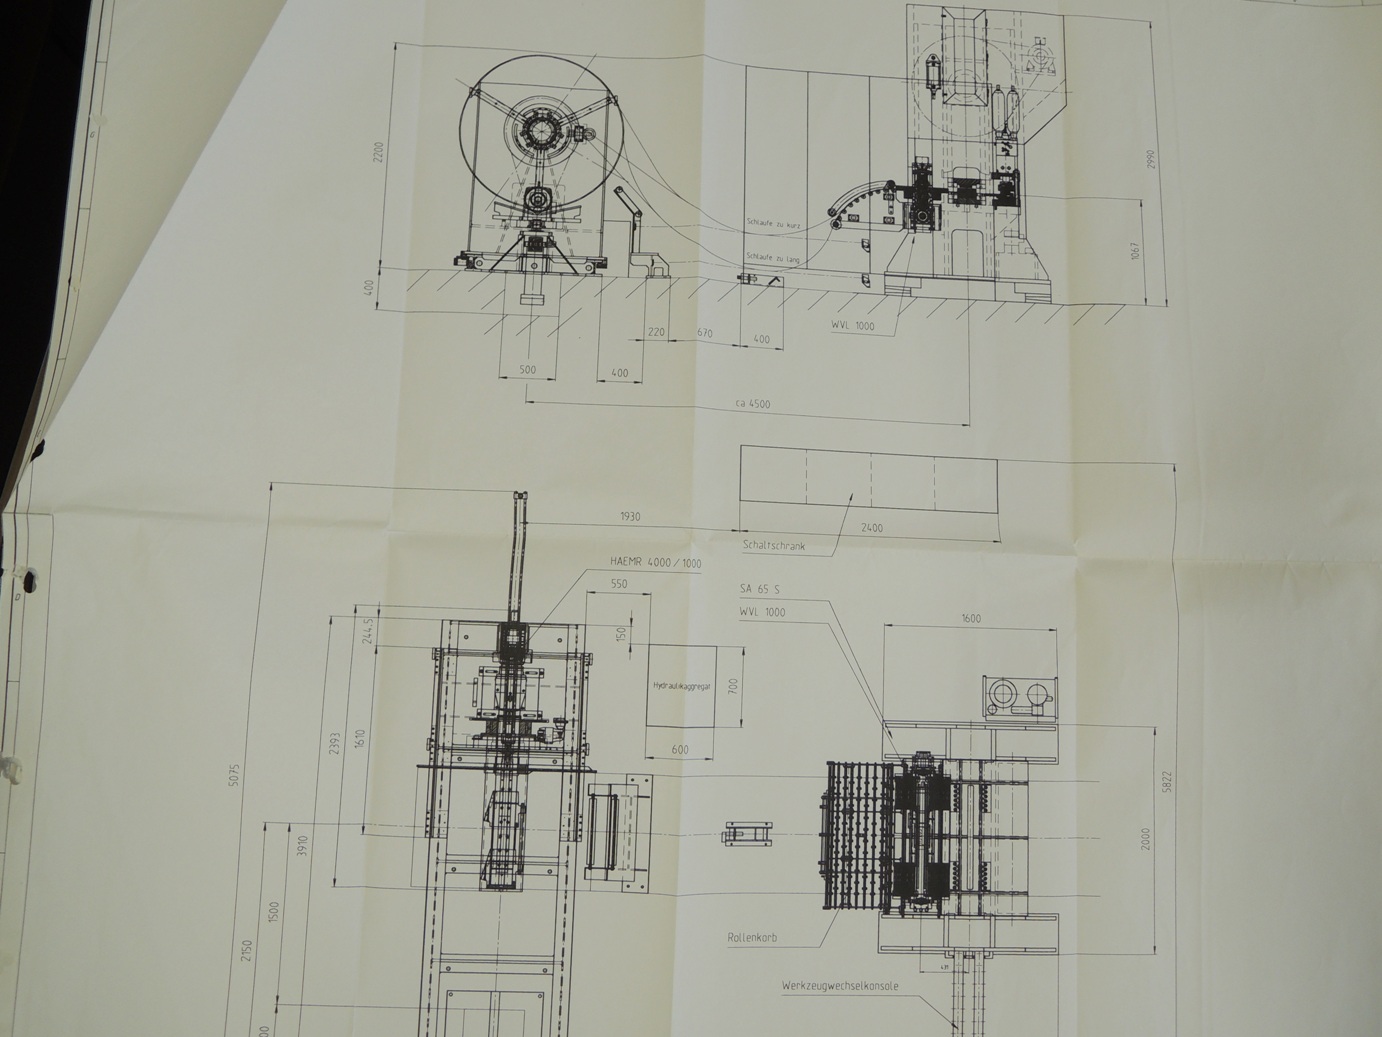 Mechanical Presses/HEILBRONN SA 63